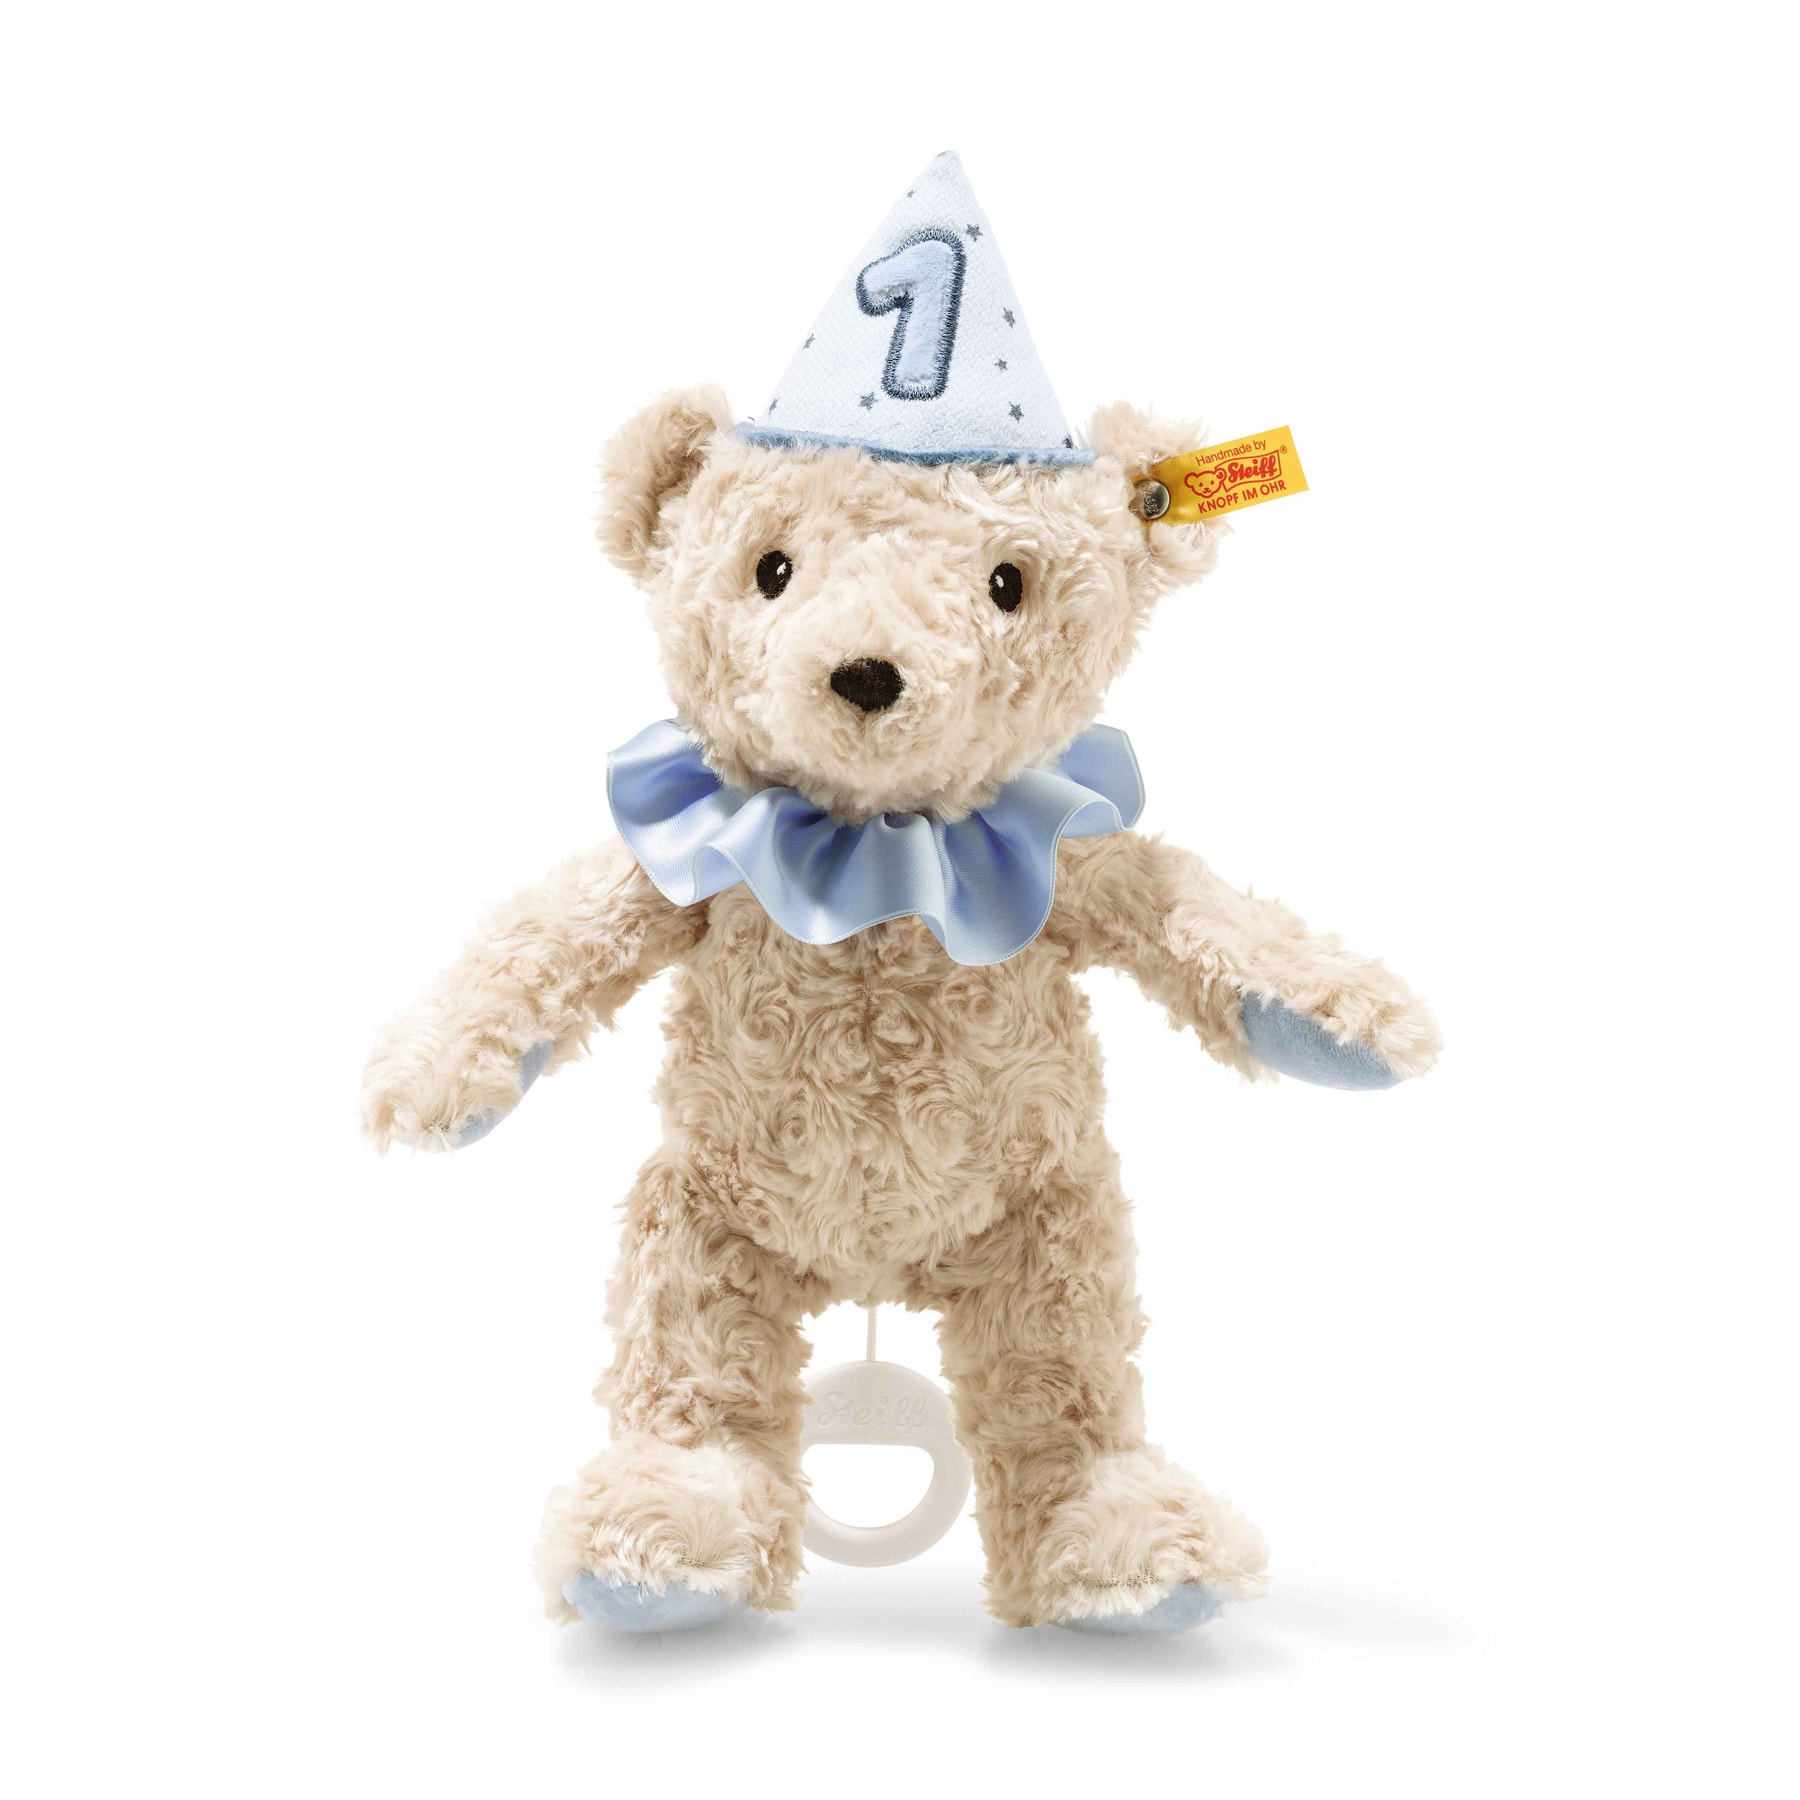 First birthday boy Teddy bear with musical box